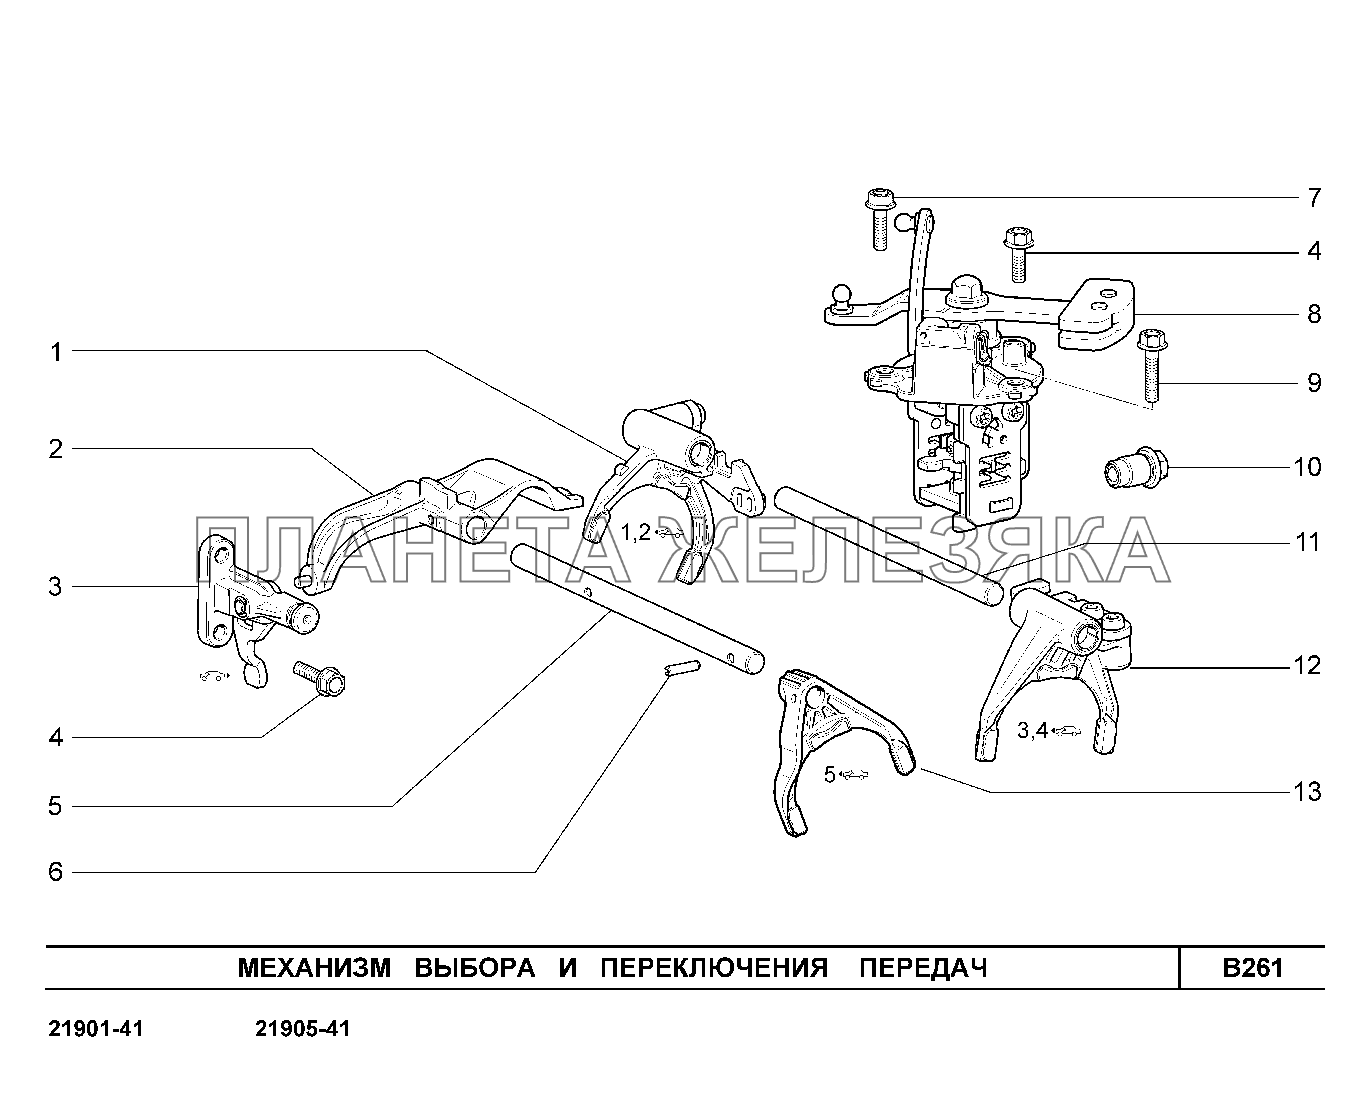 B261. Механизм выбора и переключения передач Lada Granta-2190